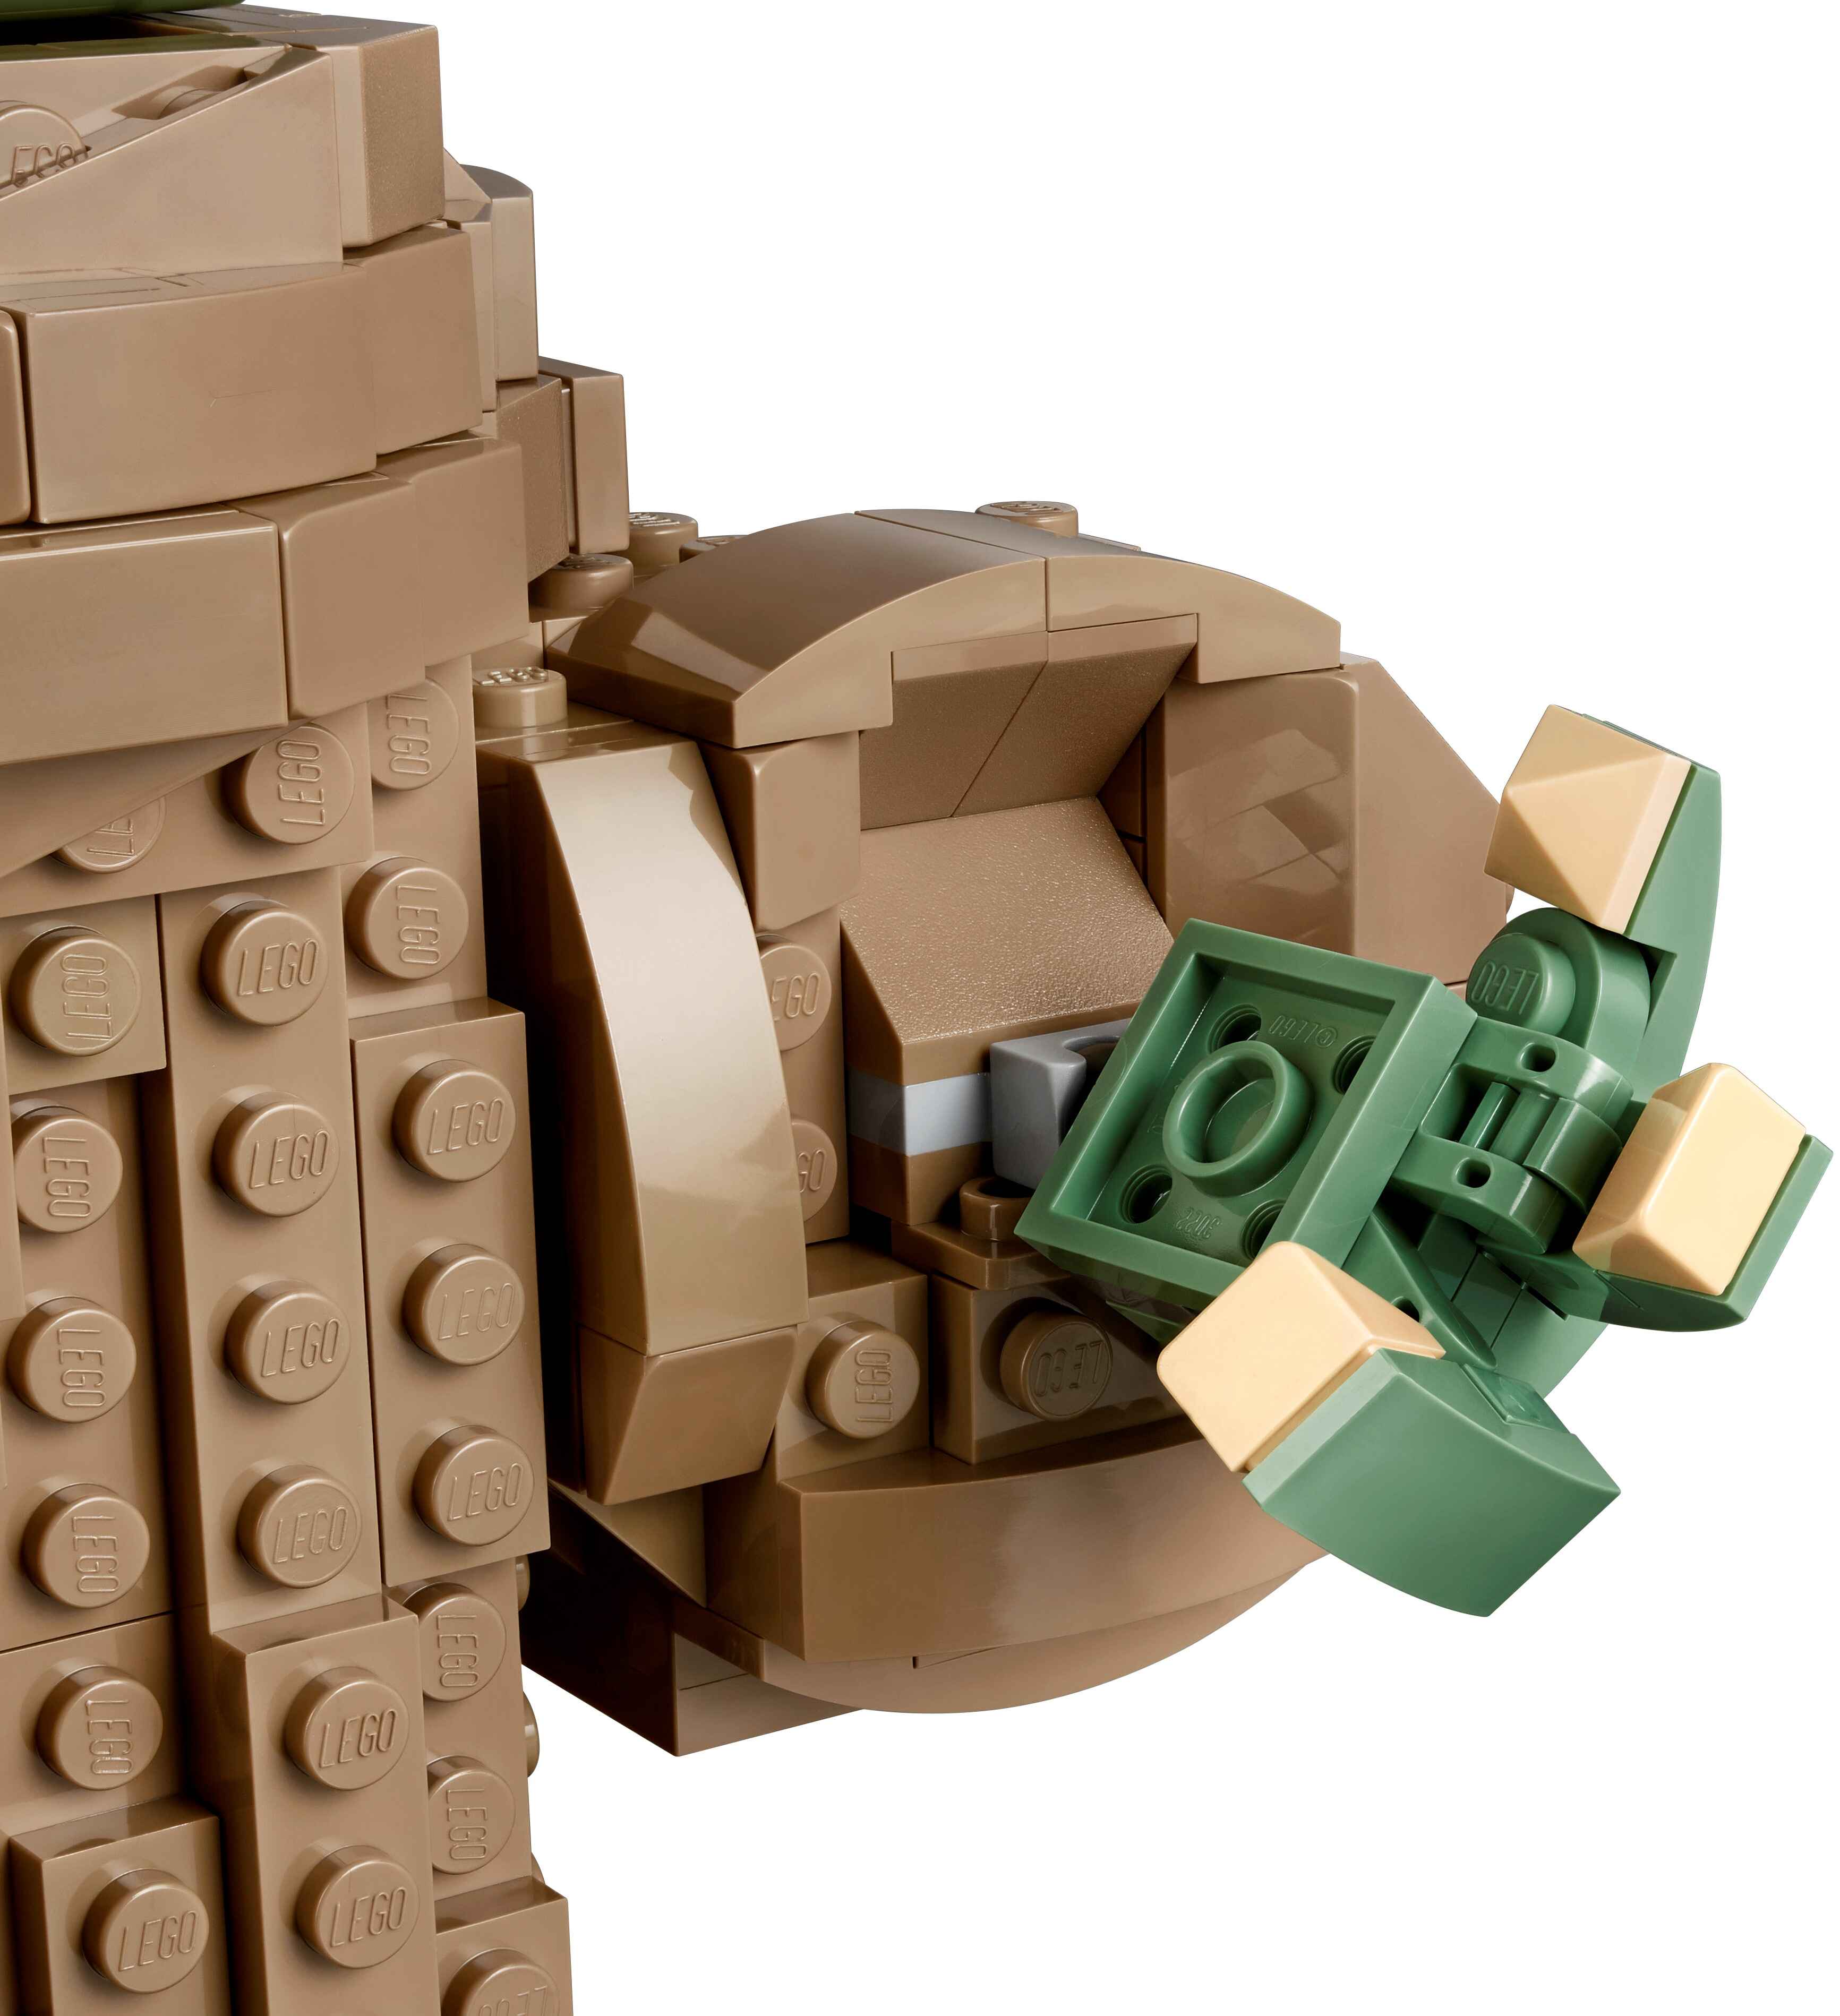 LEGO 75318 Star Wars Das Kind, The Mandalorian, Schaltknauf-Spielzeug